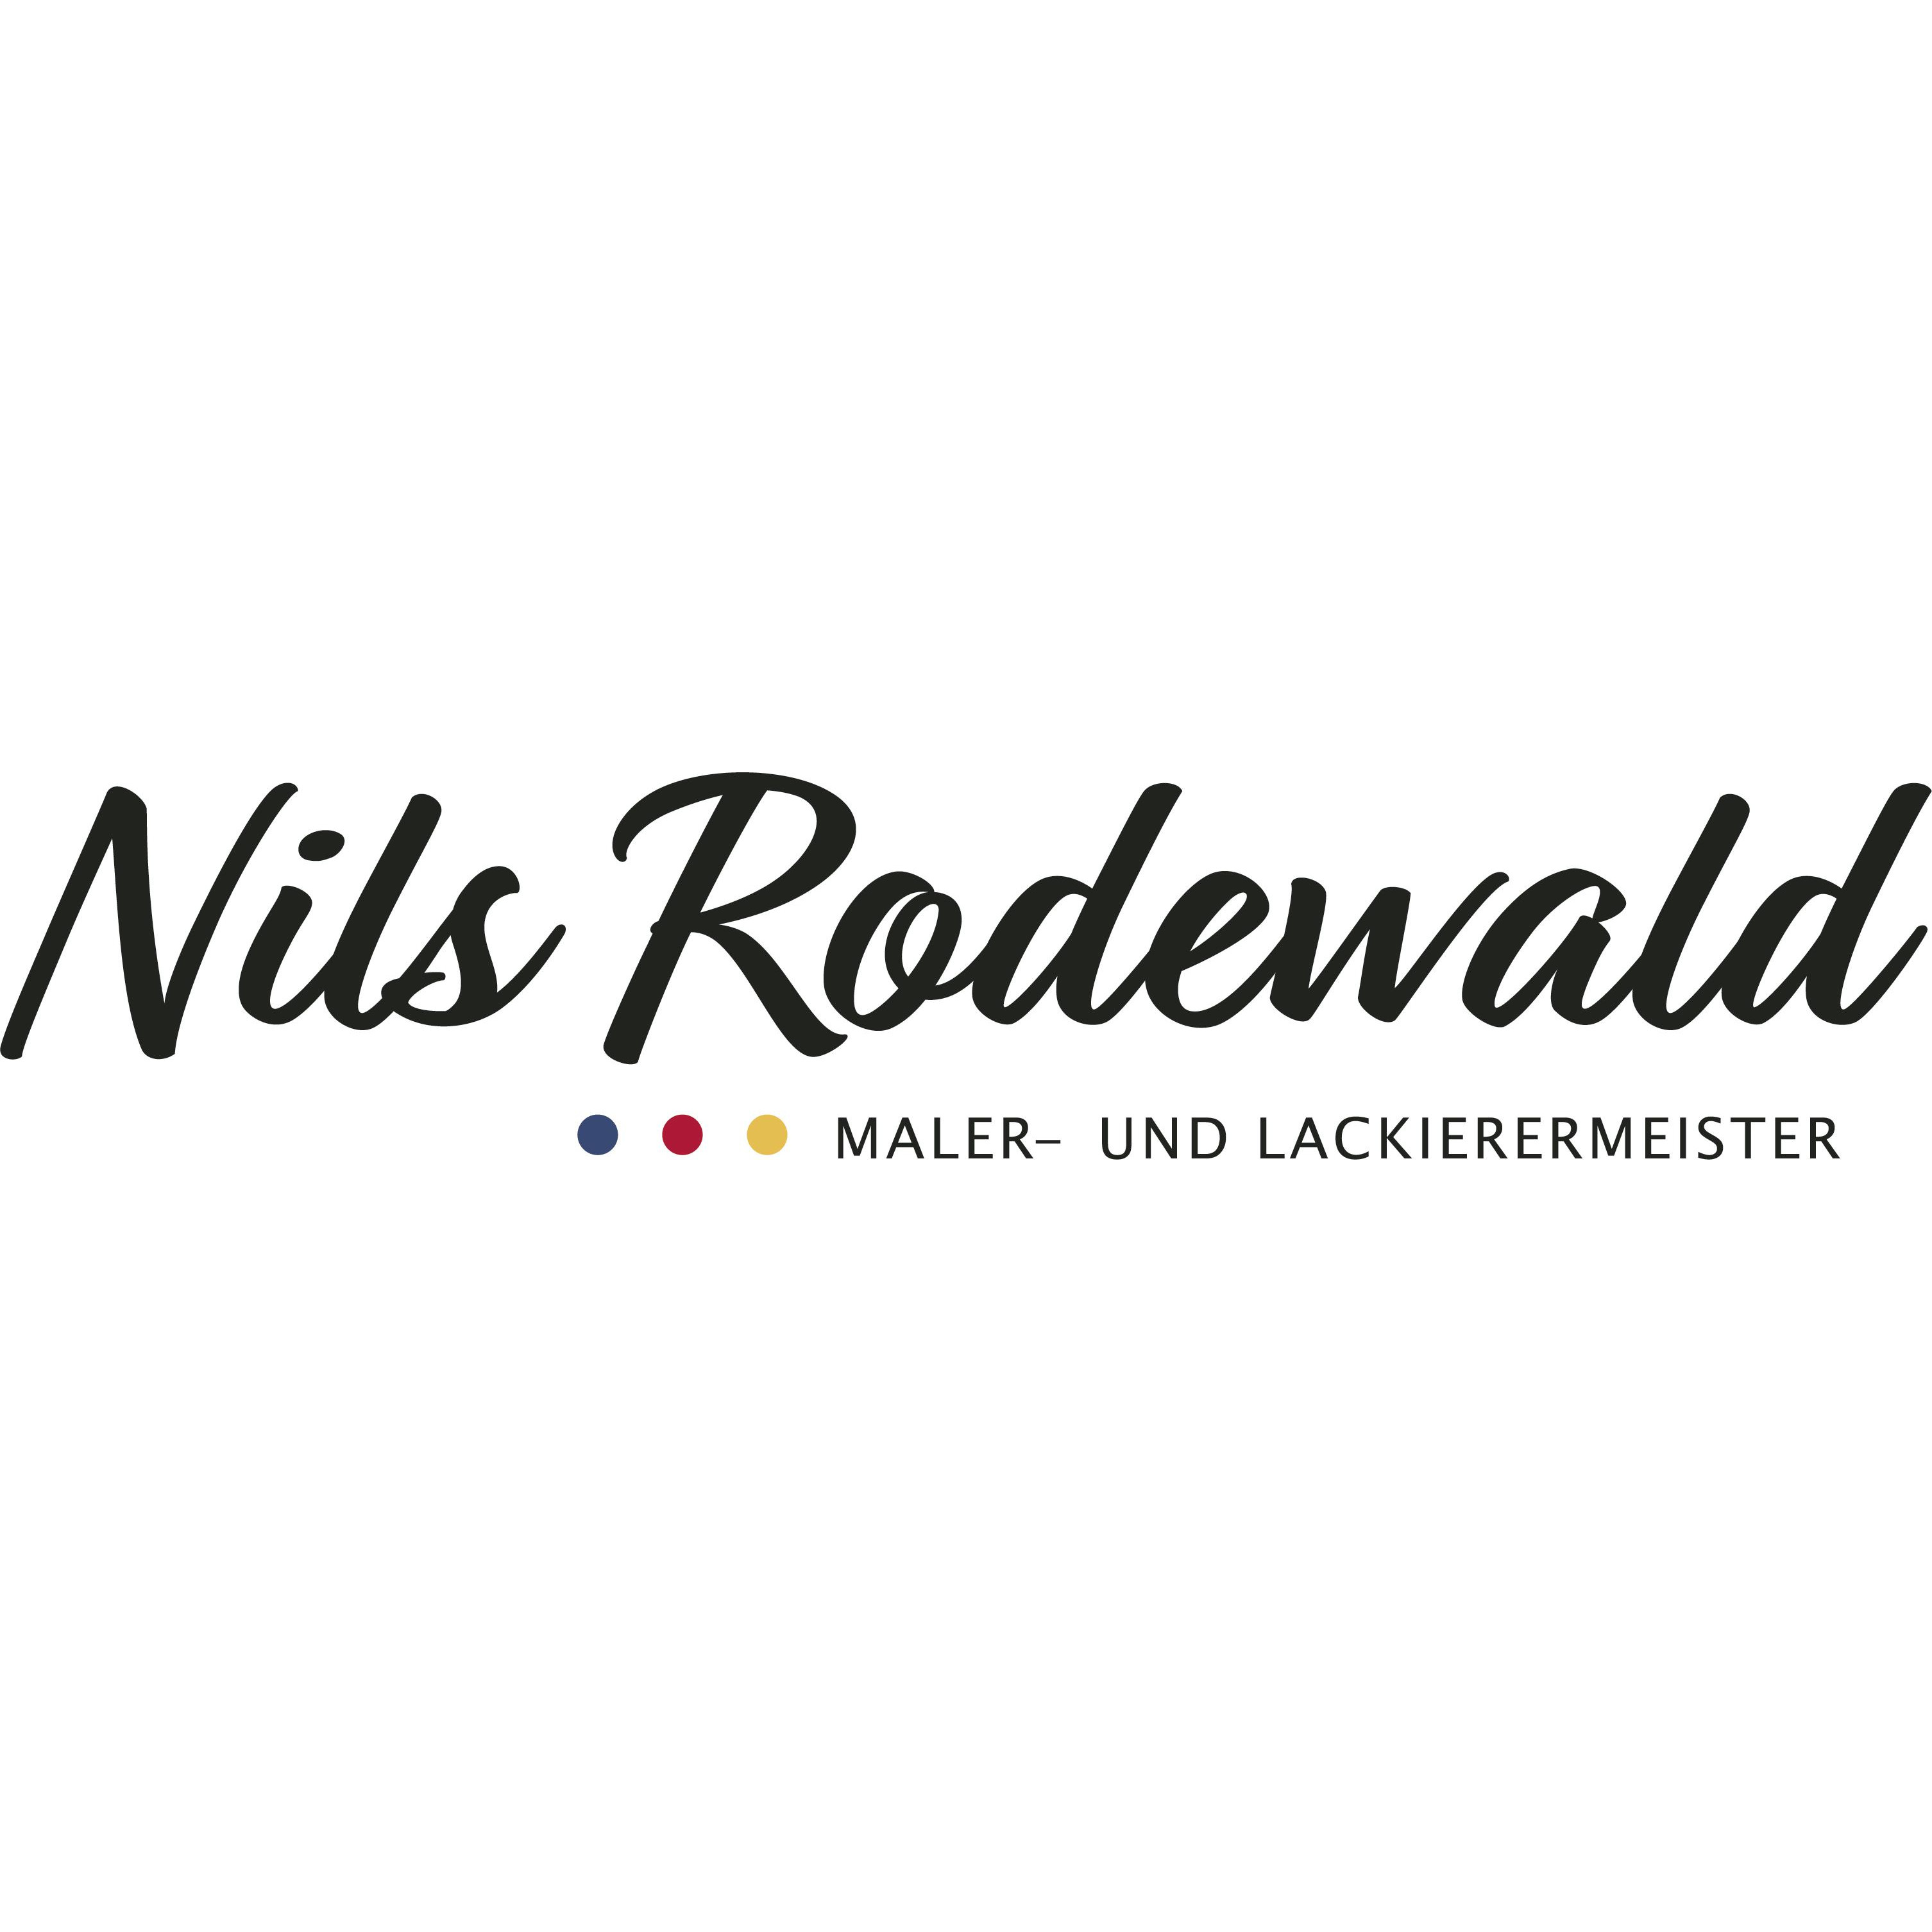 Maler und Lackierermeister Nils Rodewald in Groß Oesingen - Logo